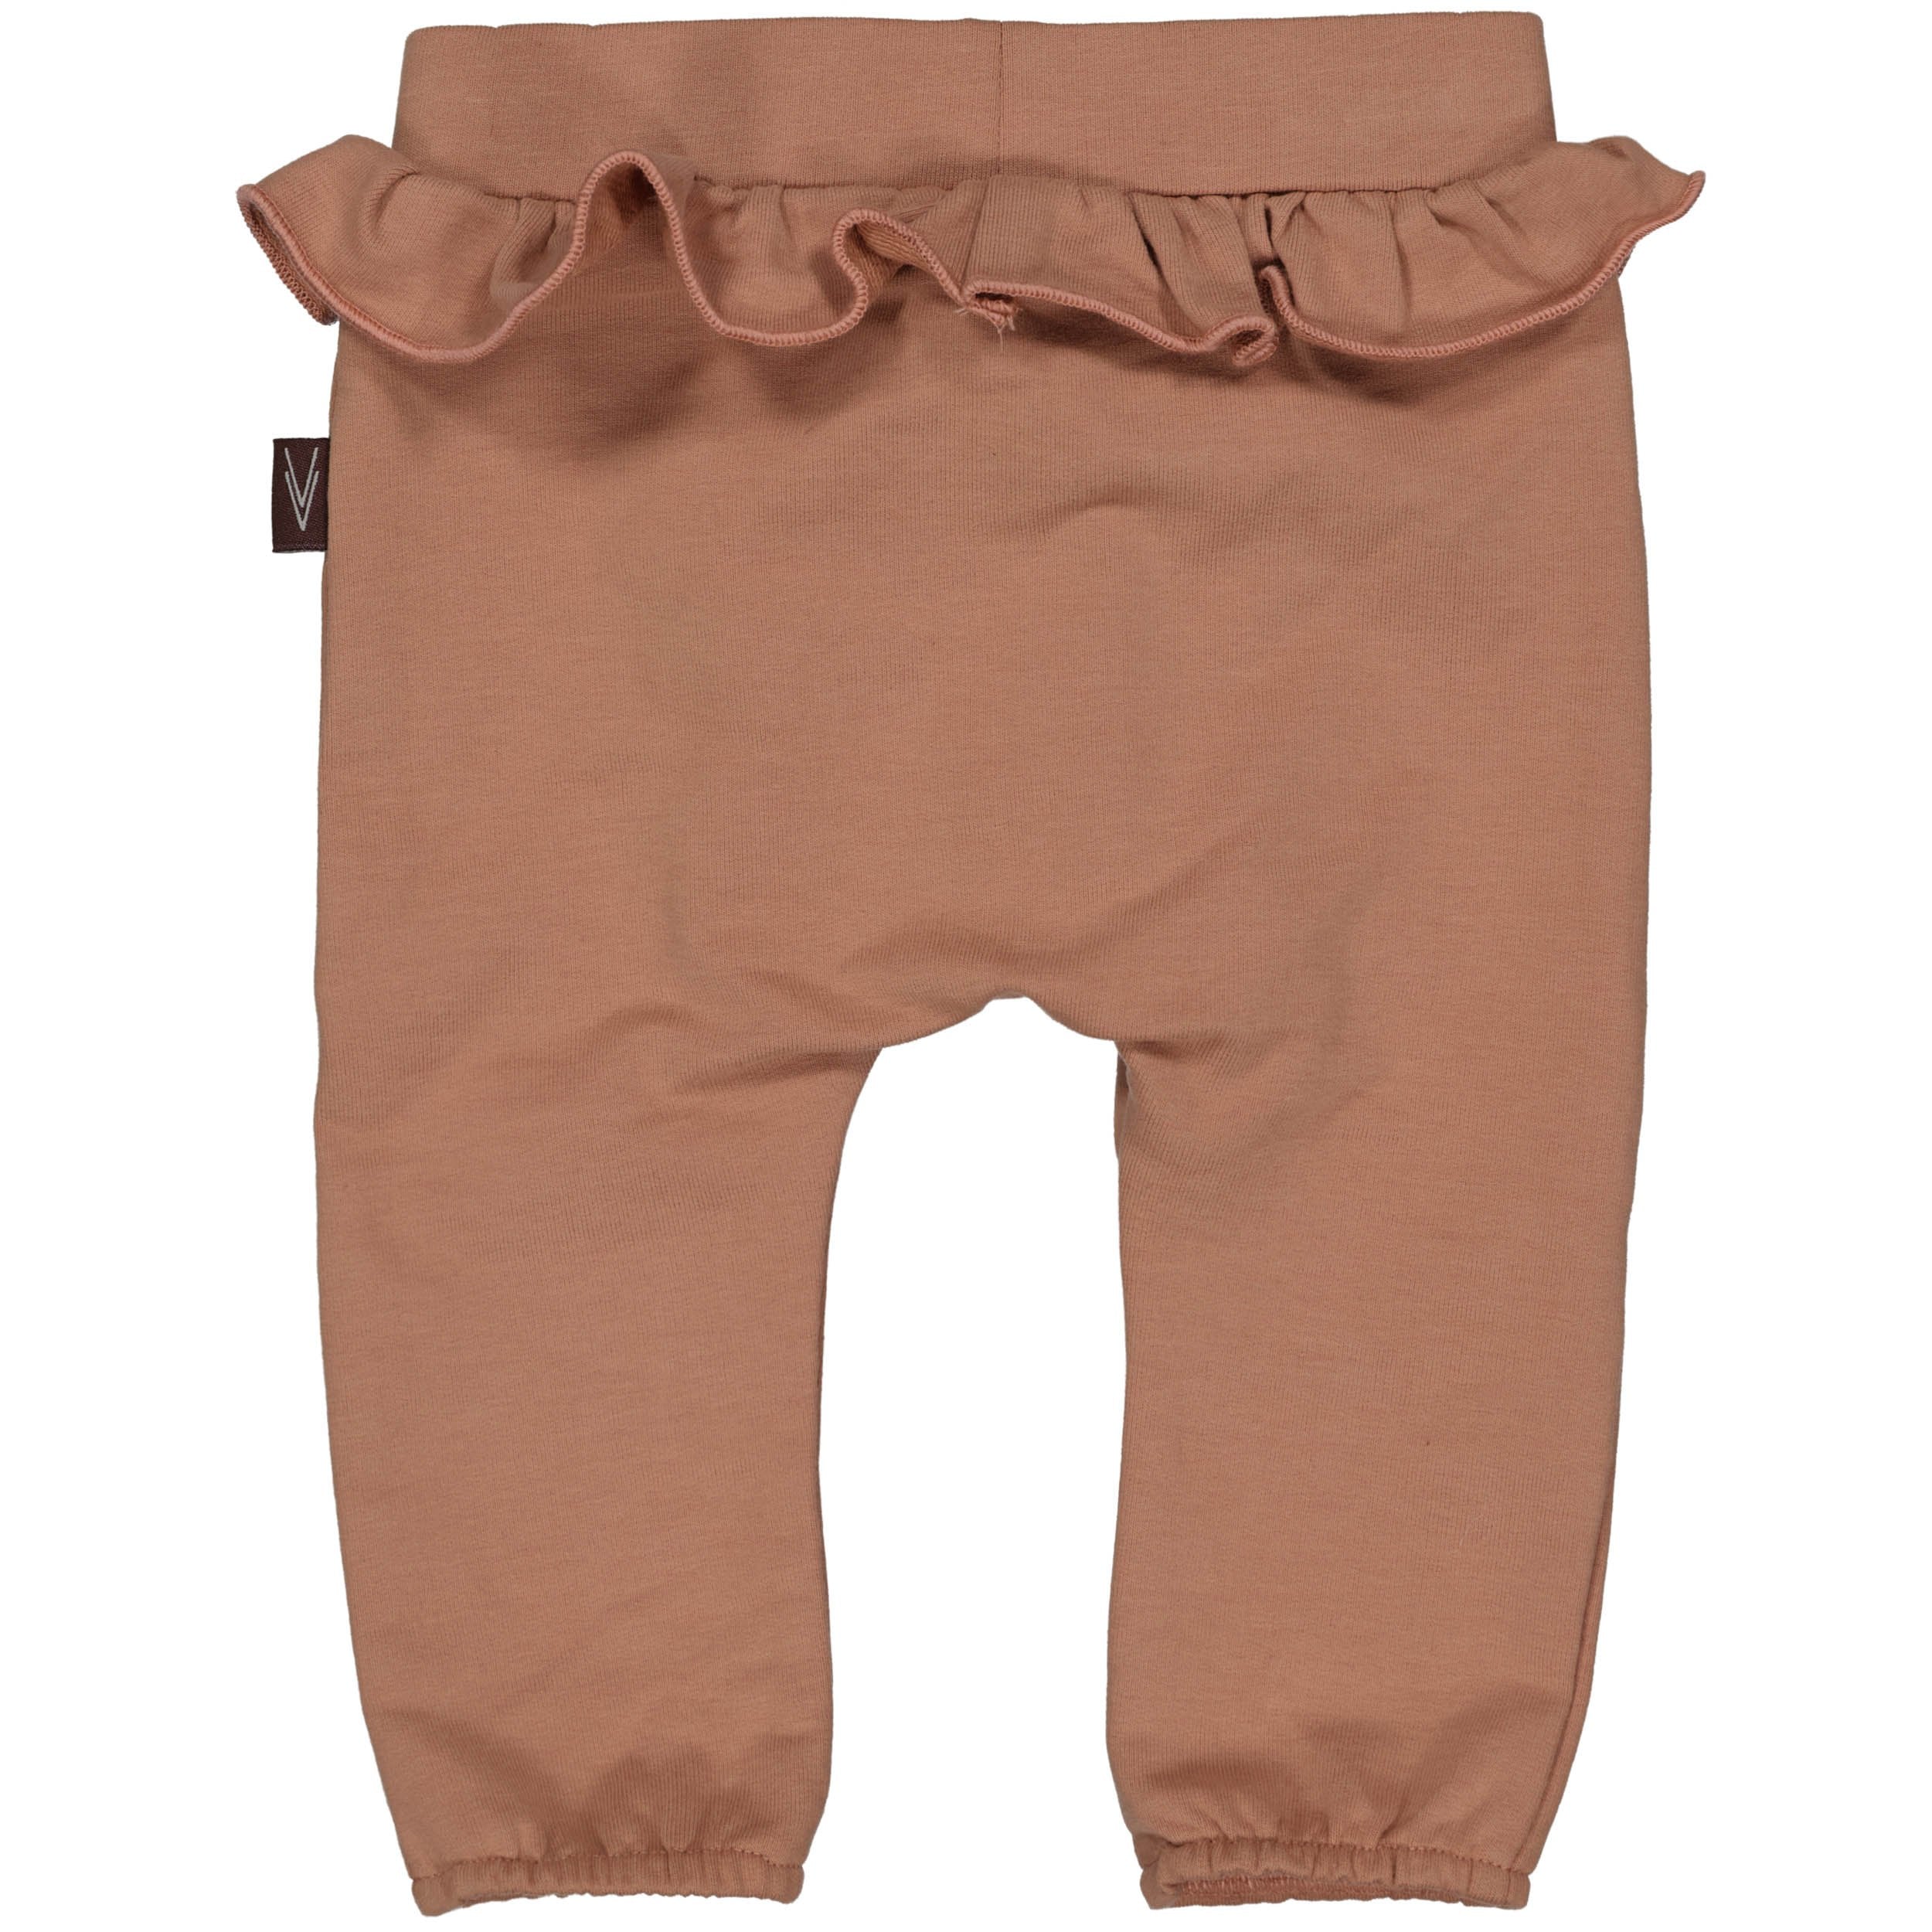 s Pants Cindy NBW21 van Levv Newborn in de kleur Brown Vintage in maat 74.